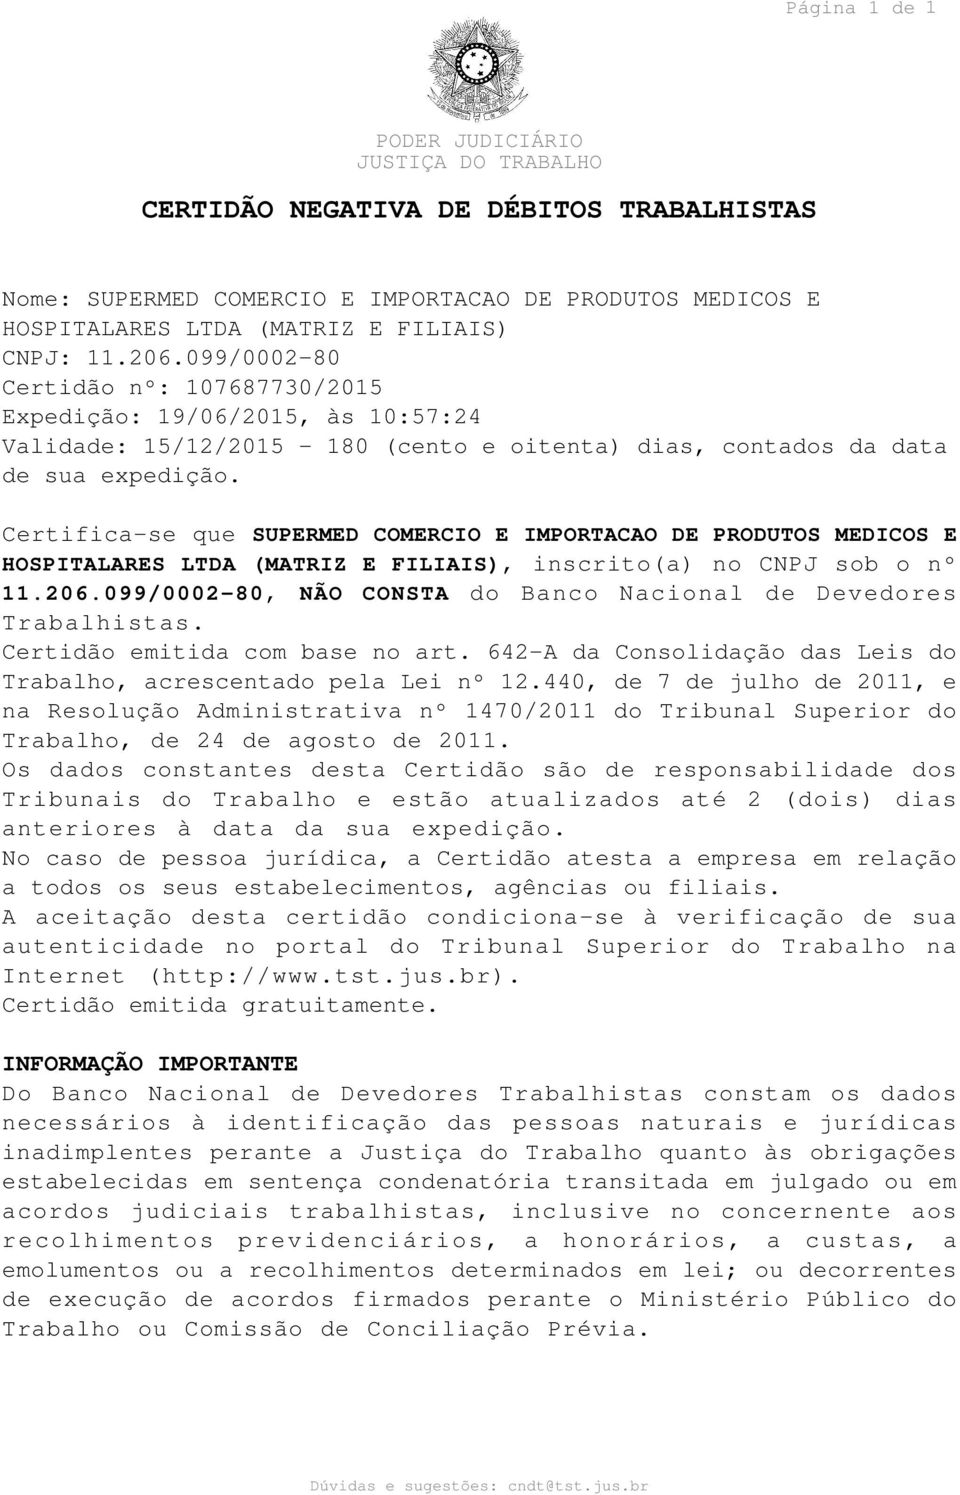 Certifica-se que SUPERMED COMERCIO E IMPORTACAO DE PRODUTOS MEDICOS E HOSPITALARES LTDA (MATRIZ E FILIAIS), inscrito(a) no CNPJ sob o nº 11.206.